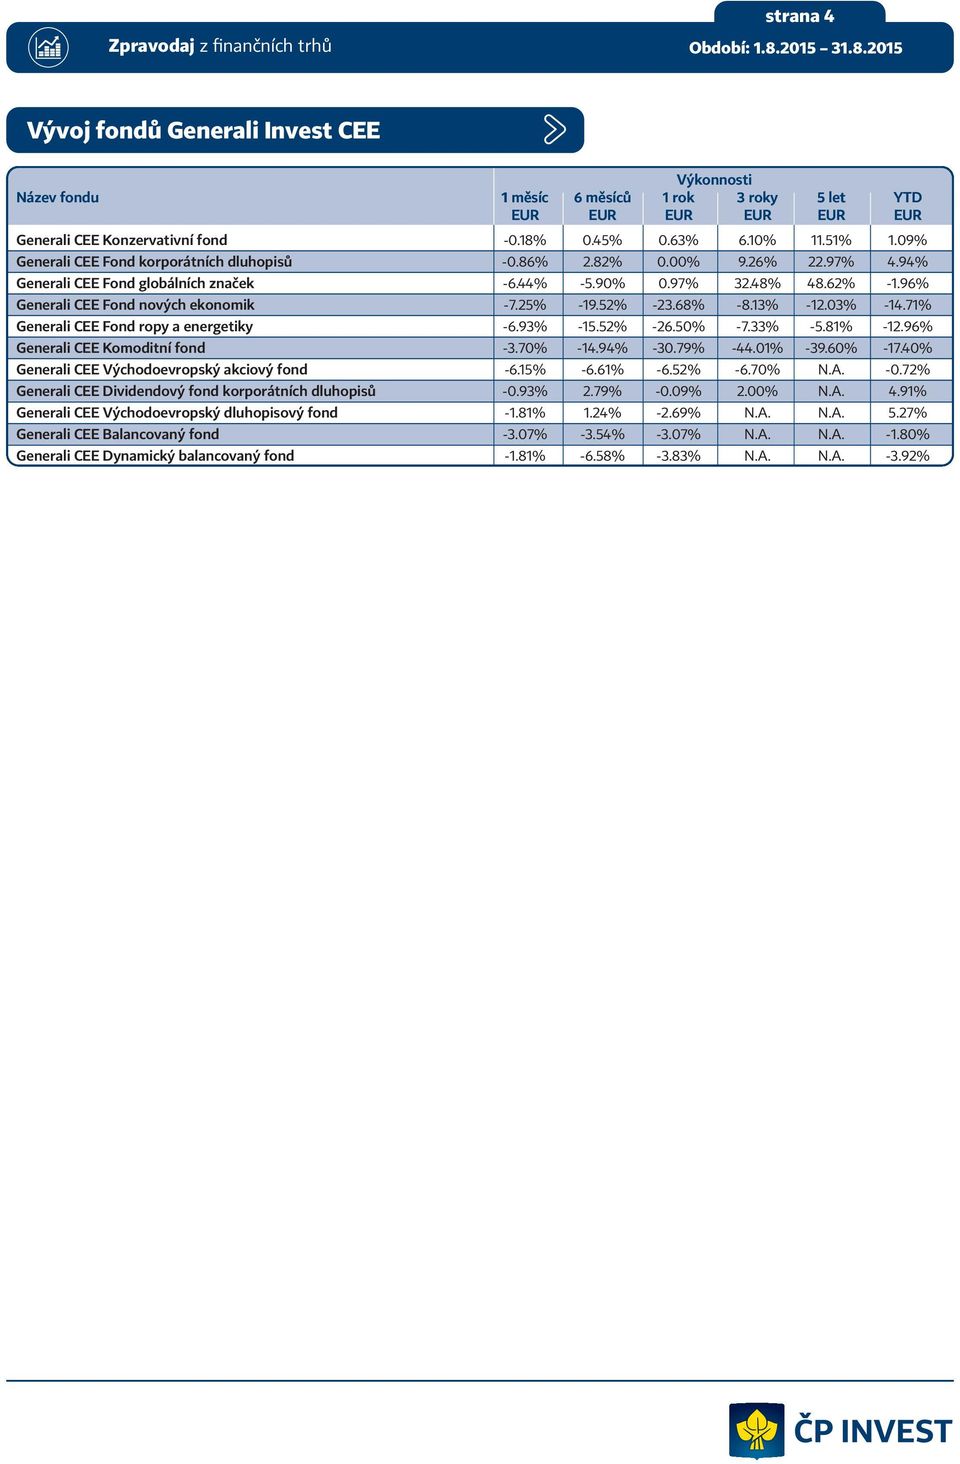 25% -19.52% -23.68% -8.13% -12.03% -14.71% Generali CEE Fond ropy a energetiky -6.93% -15.52% -26.50% -7.33% -5.81% -12.96% Generali CEE Komoditní fond -3.70% -14.94% -30.79% -44.01% -39.60% -17.